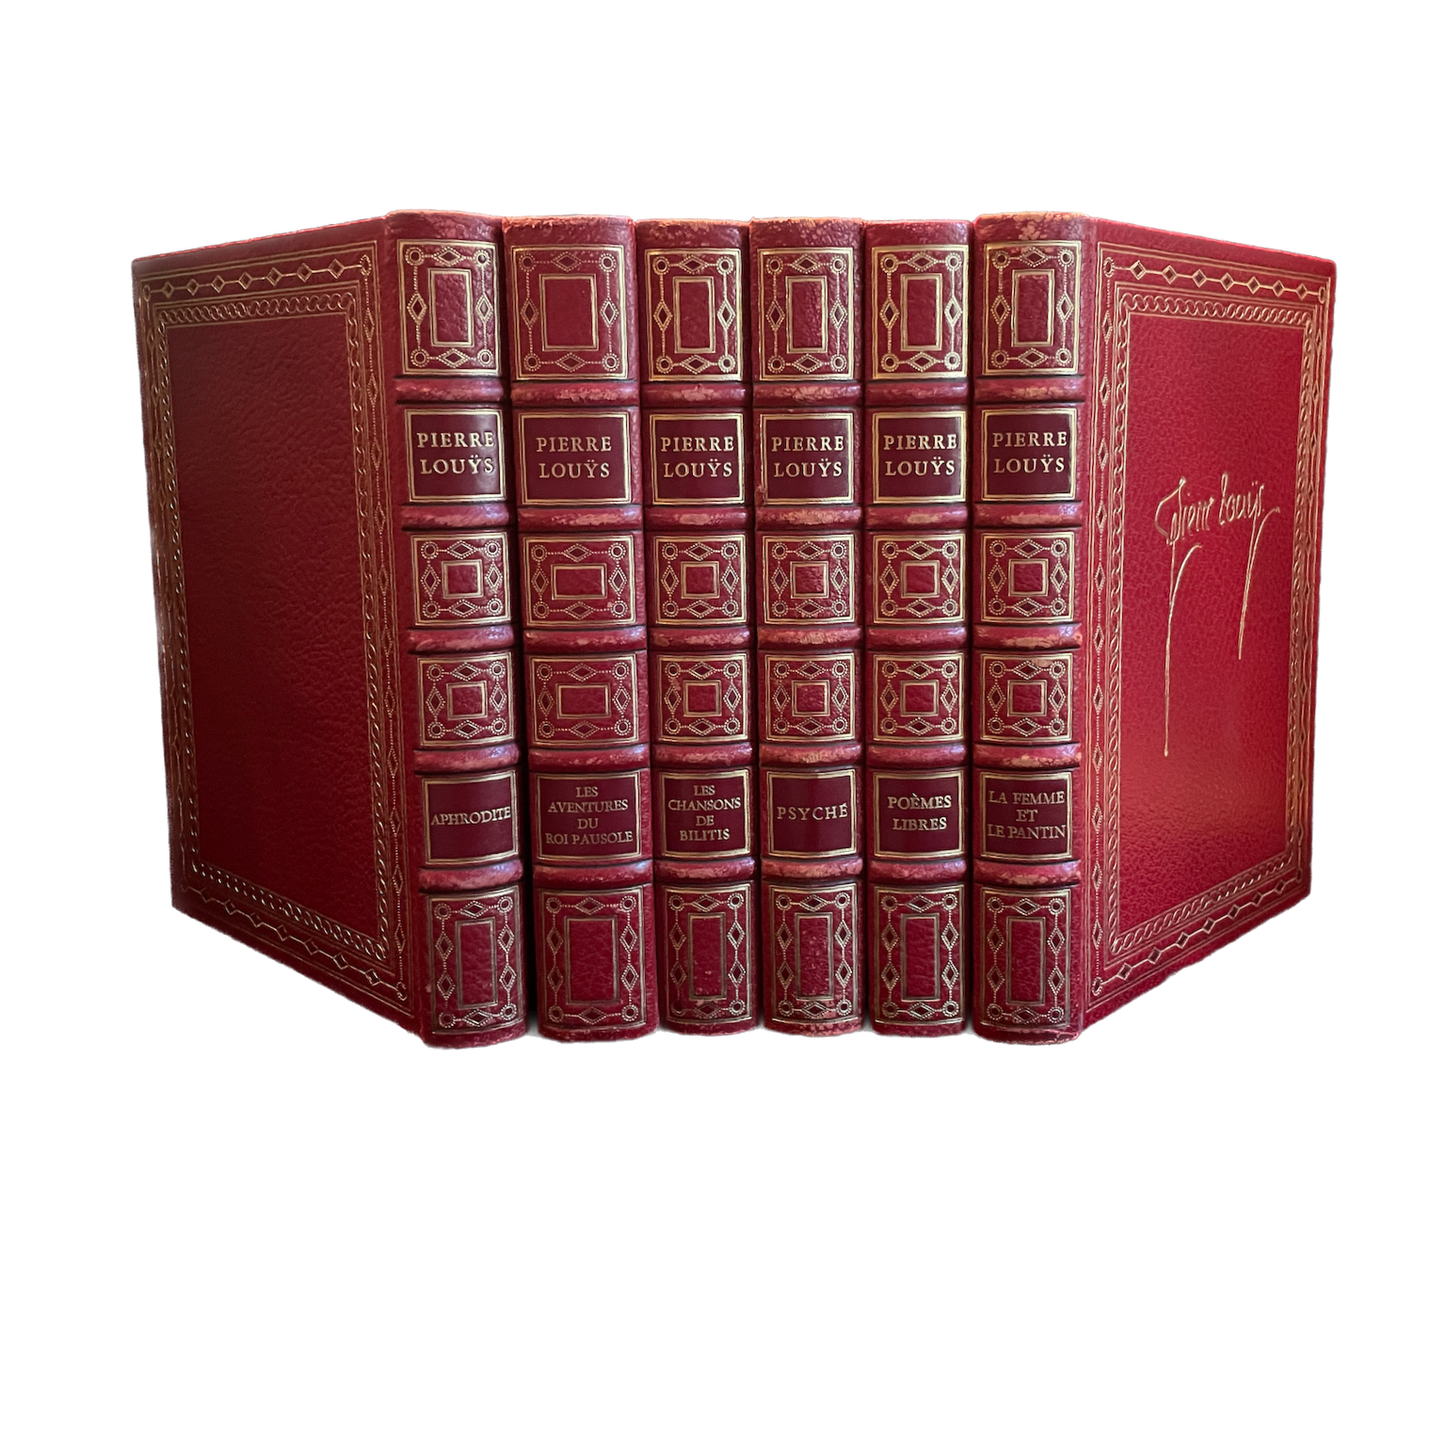 1973 - Chefs d'oeuvre de Pierre Louÿs, 6 volumes, éditions de l'Ibis